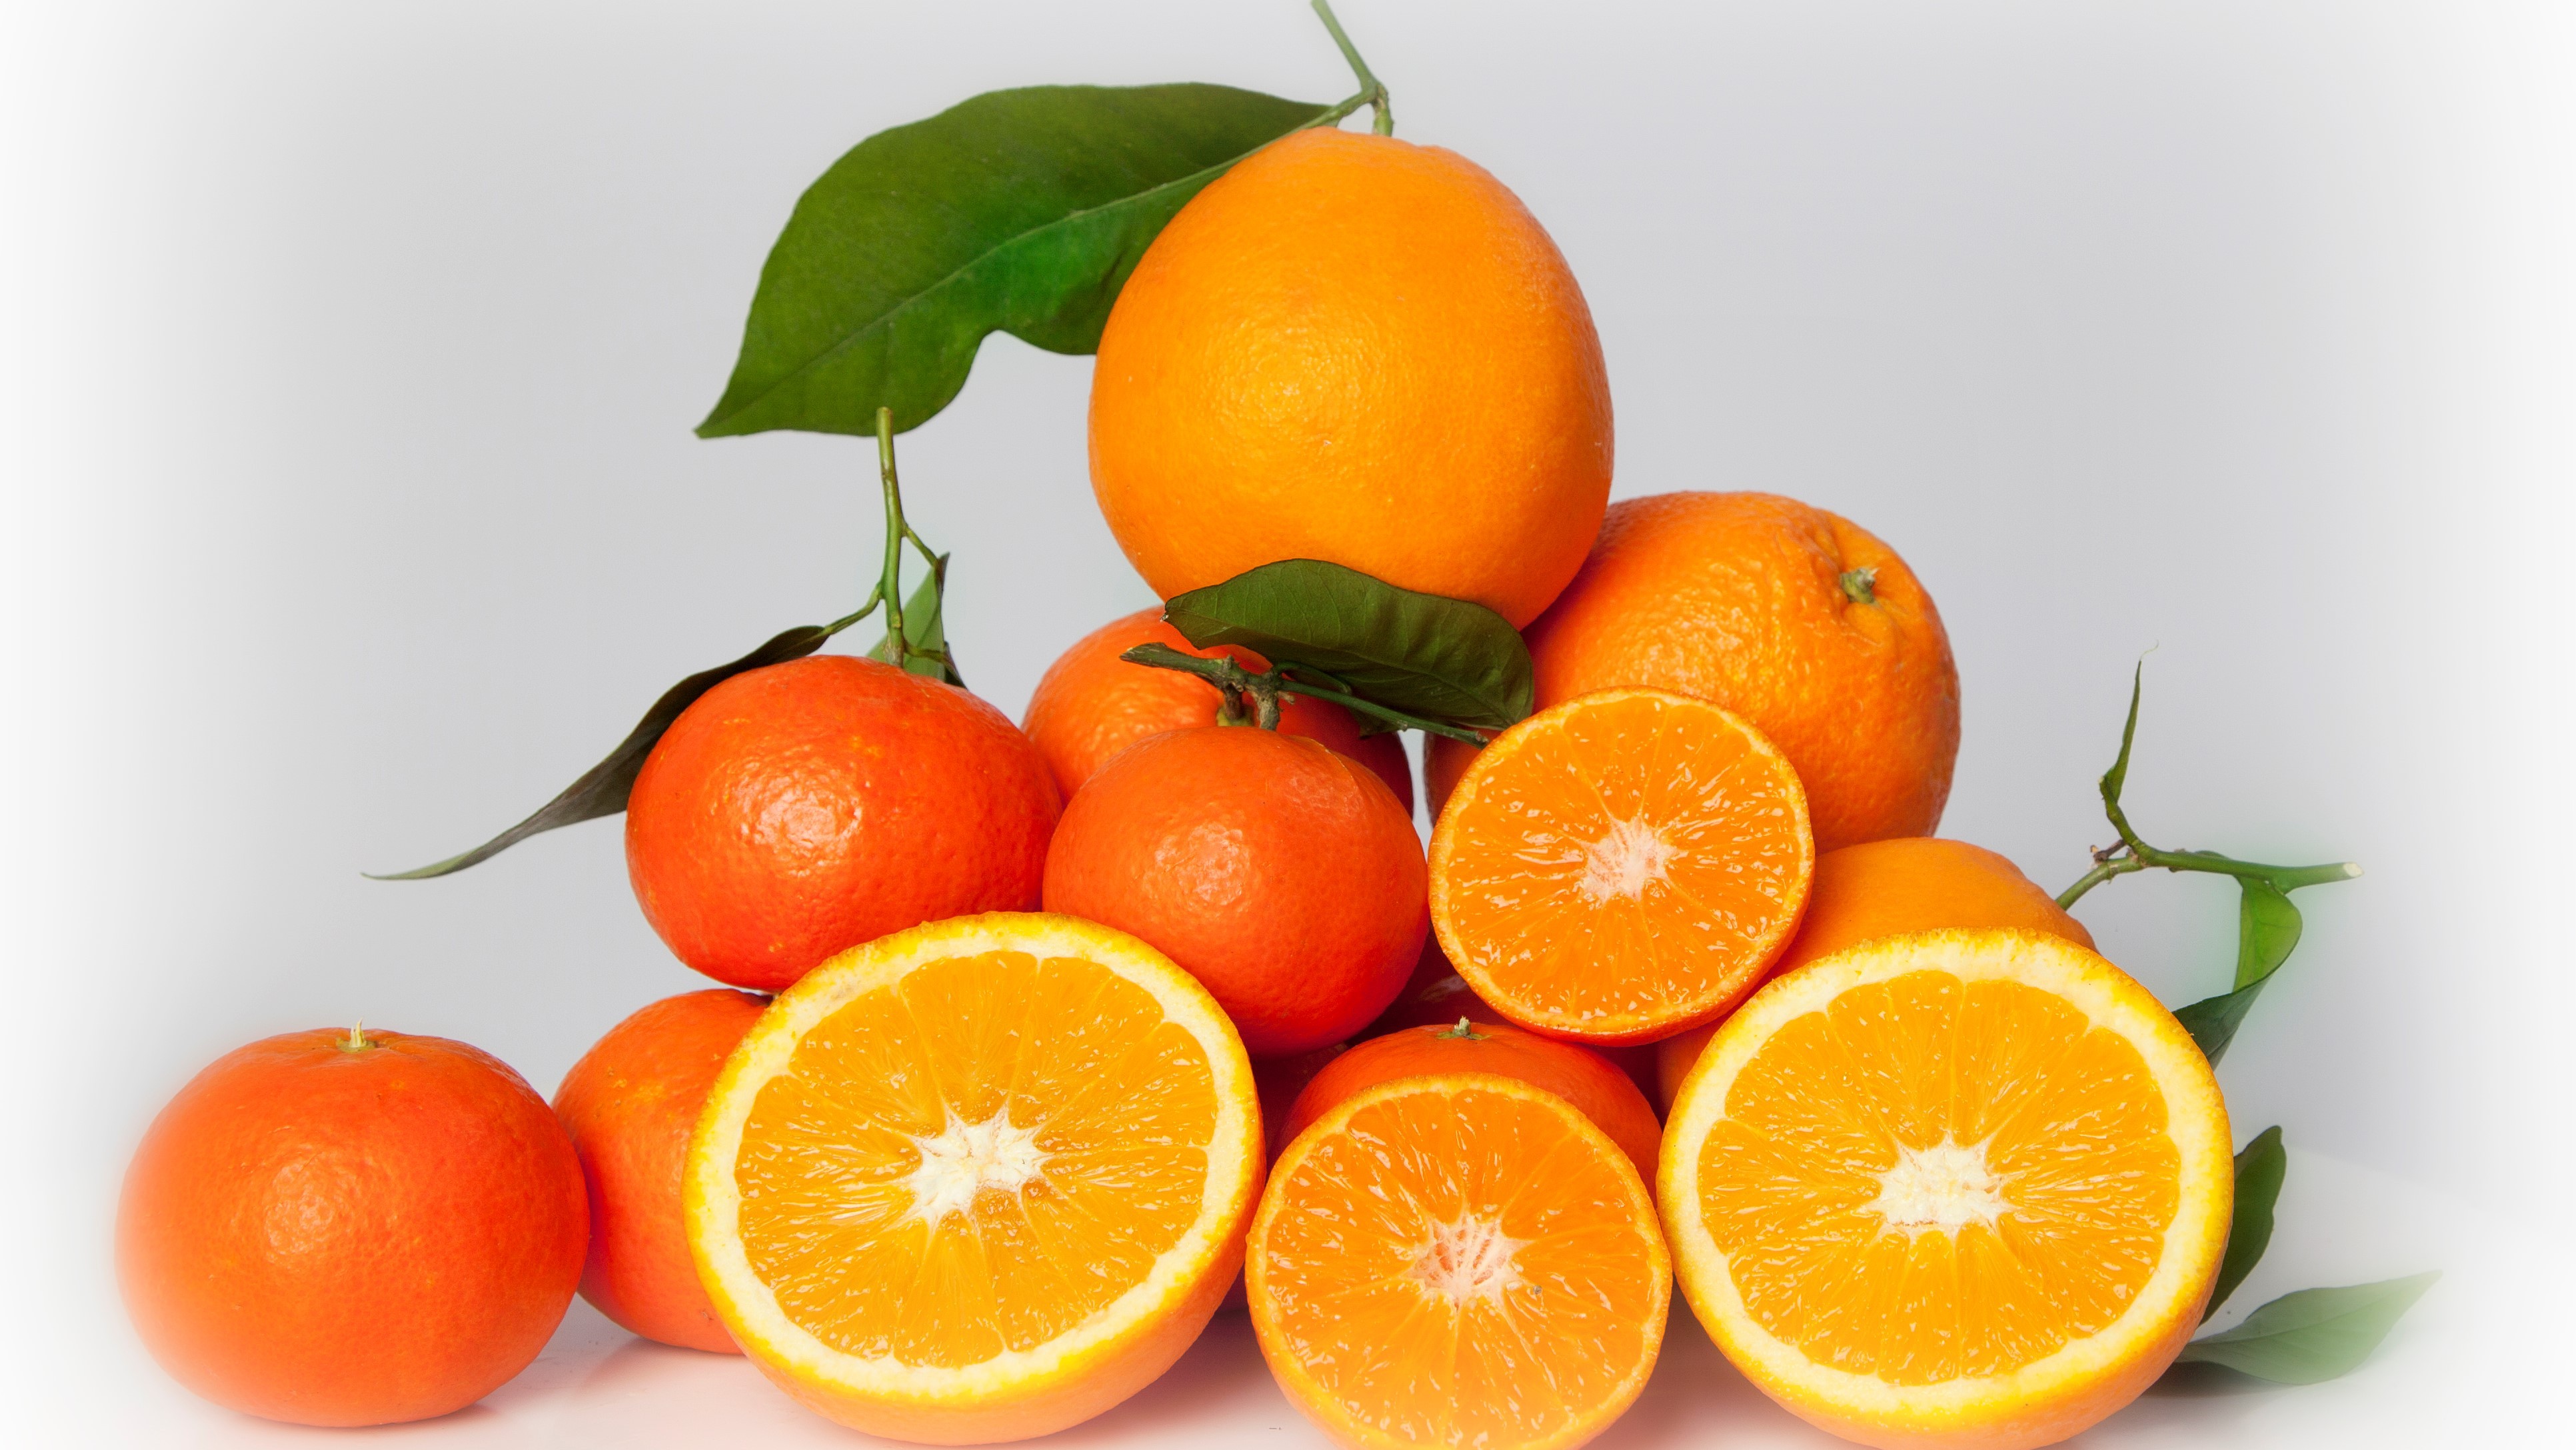 Gourmet Oranges